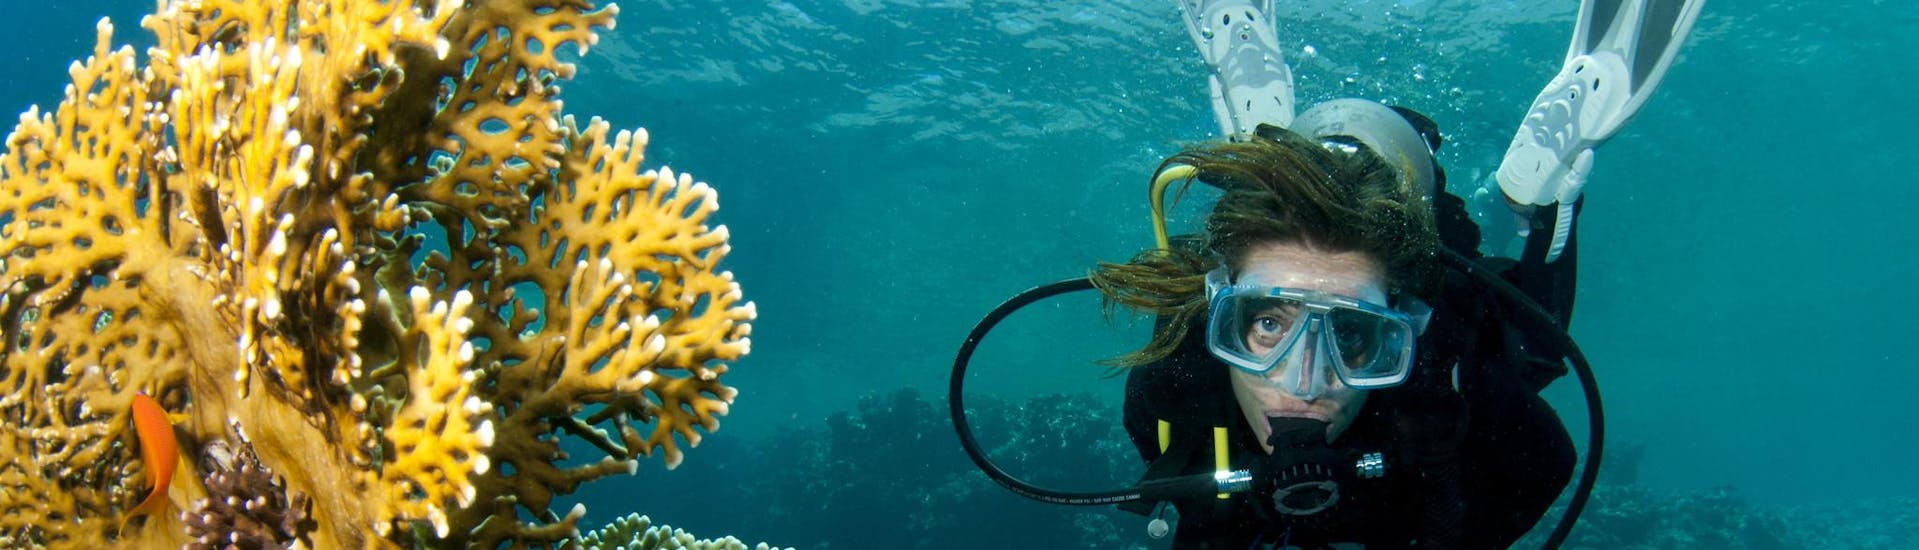 Een vrouw vermaakt zich tijdens een duikactiviteit in riffen en koralen.